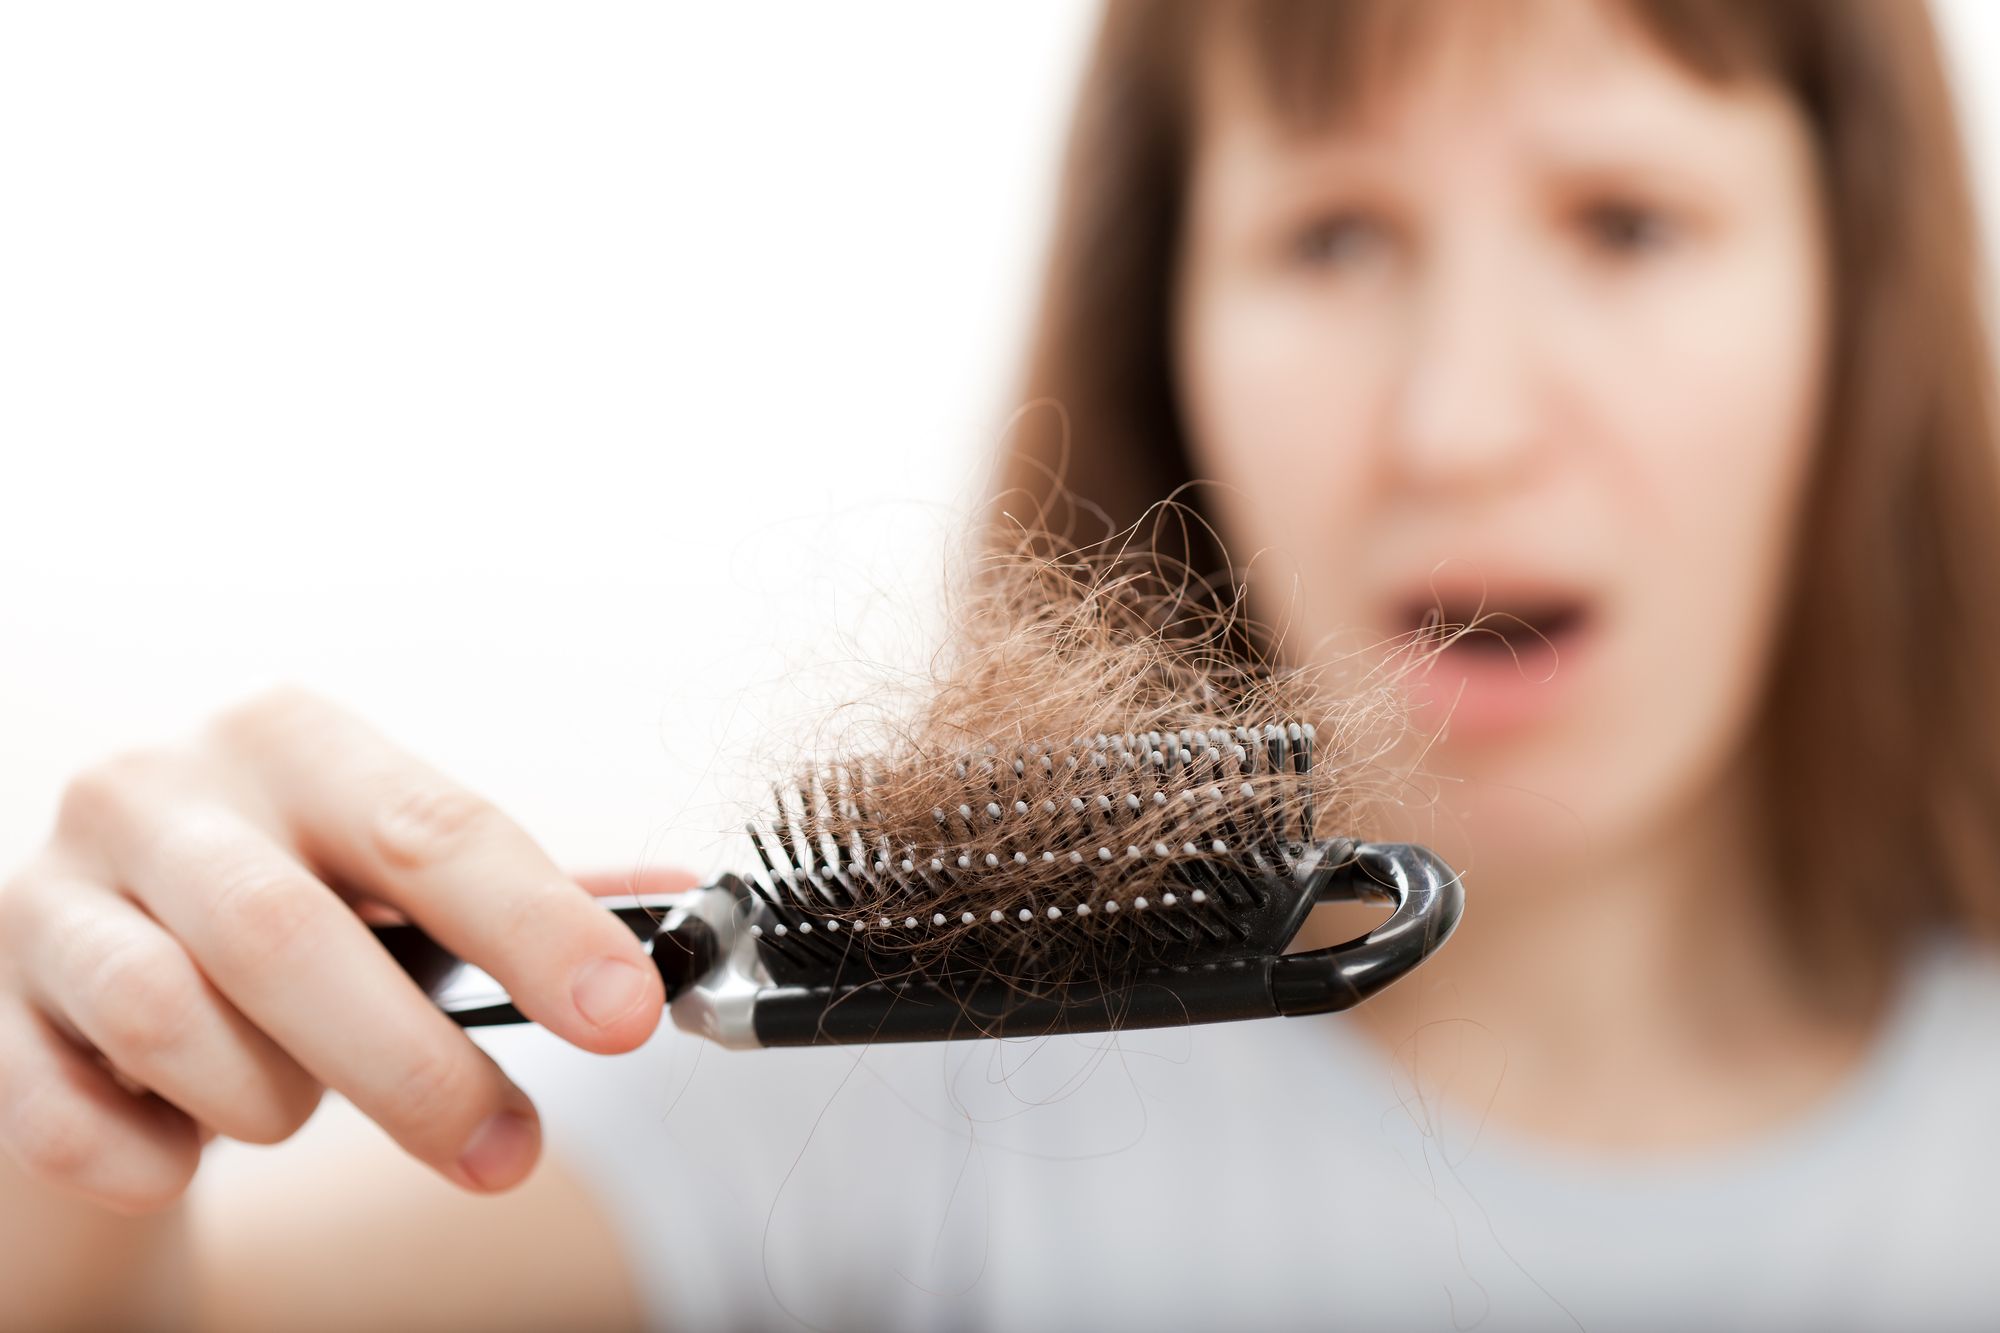 فوائد الديرما ستامب لحل مشاكل تساقط الشعر